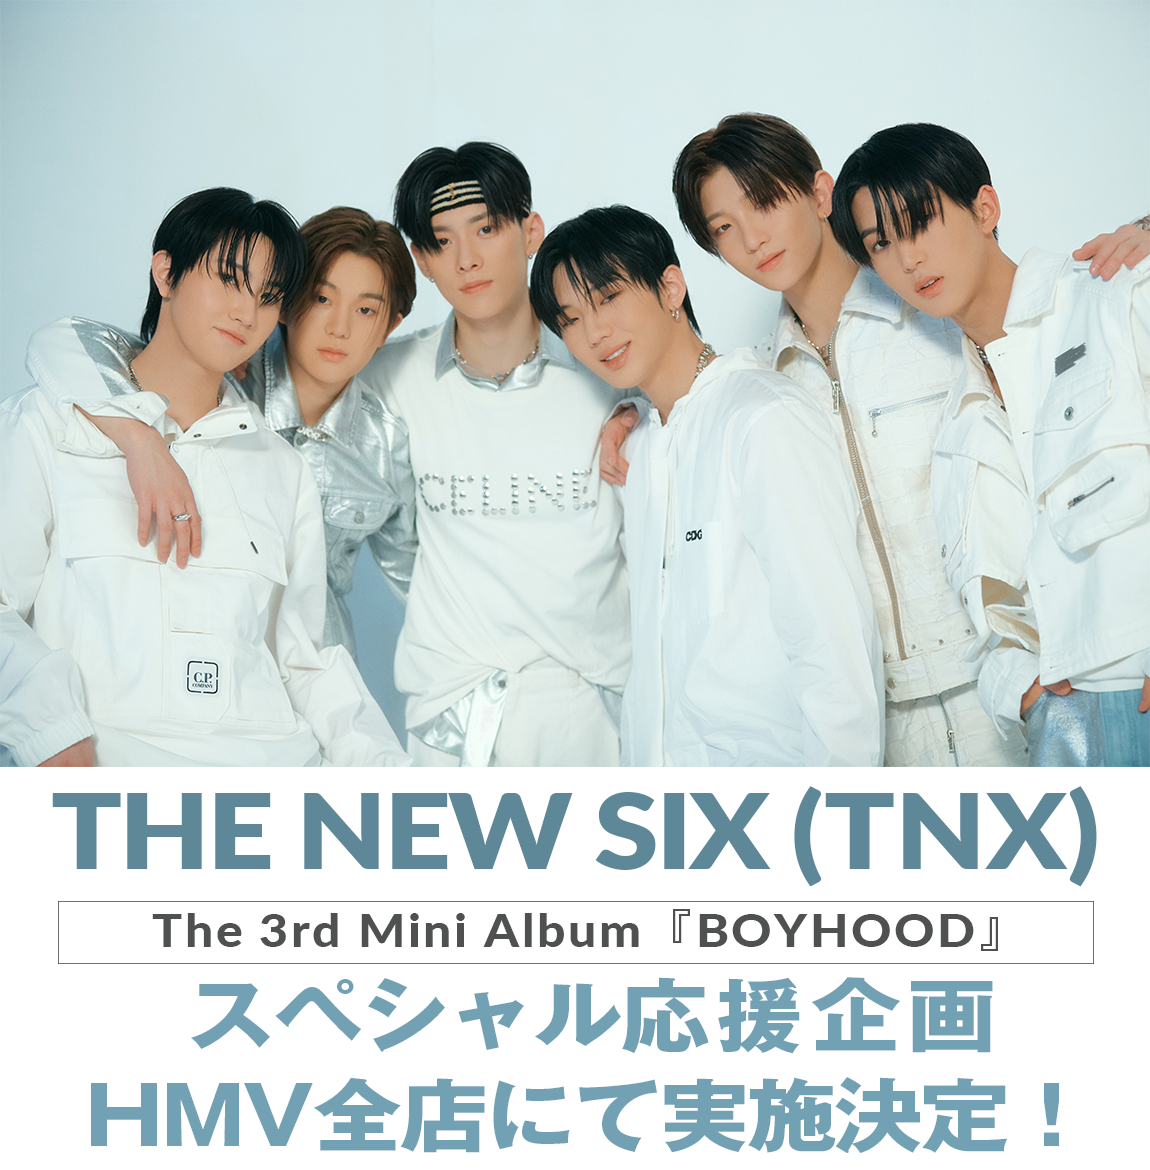 全国のHMV店舗にてTHE NEW SIX (TNX) The 3rd Mini Album 『BOYHOOD 